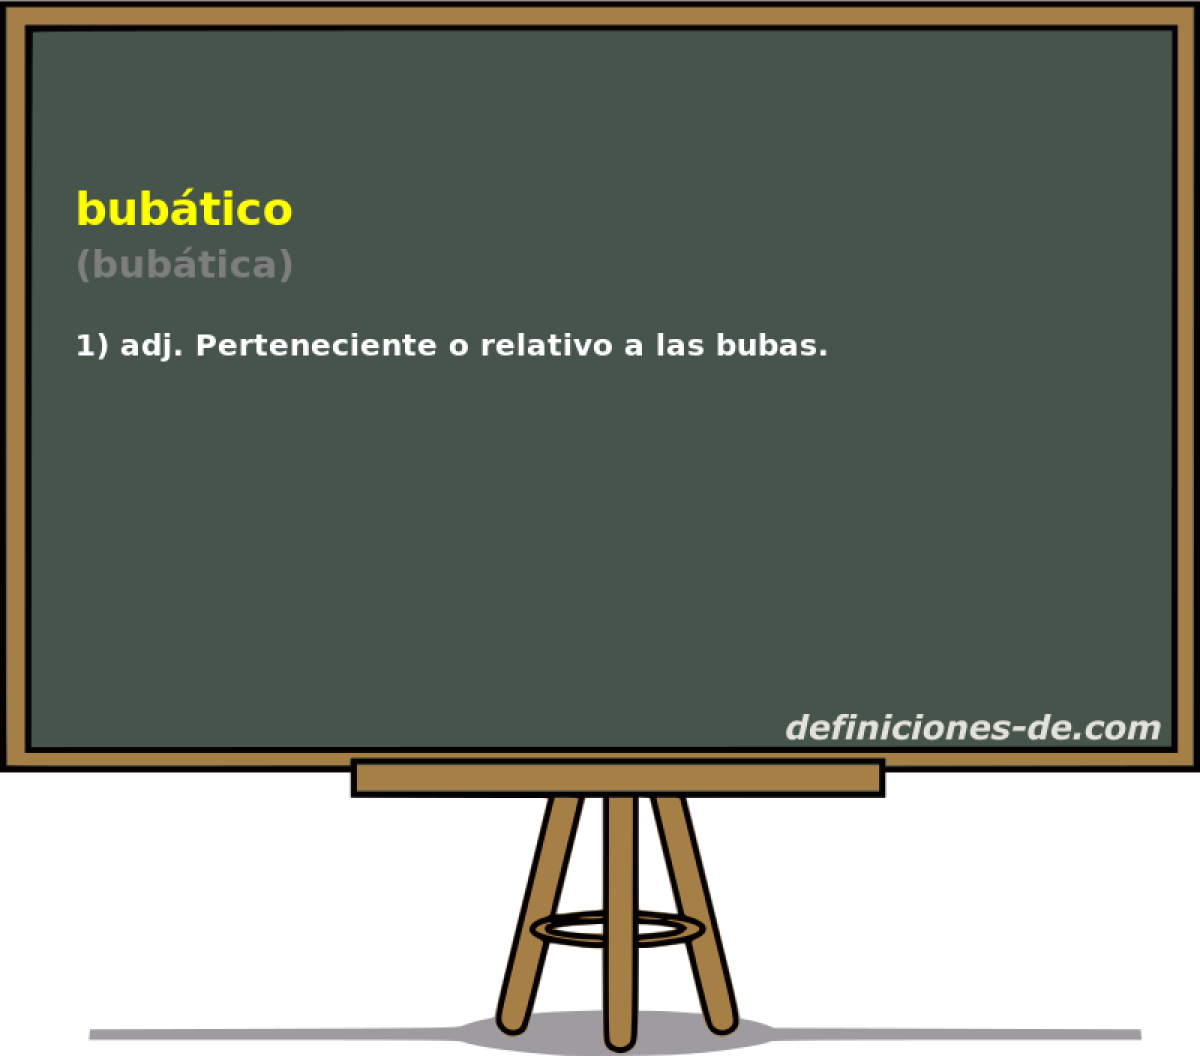 bubtico (bubtica)